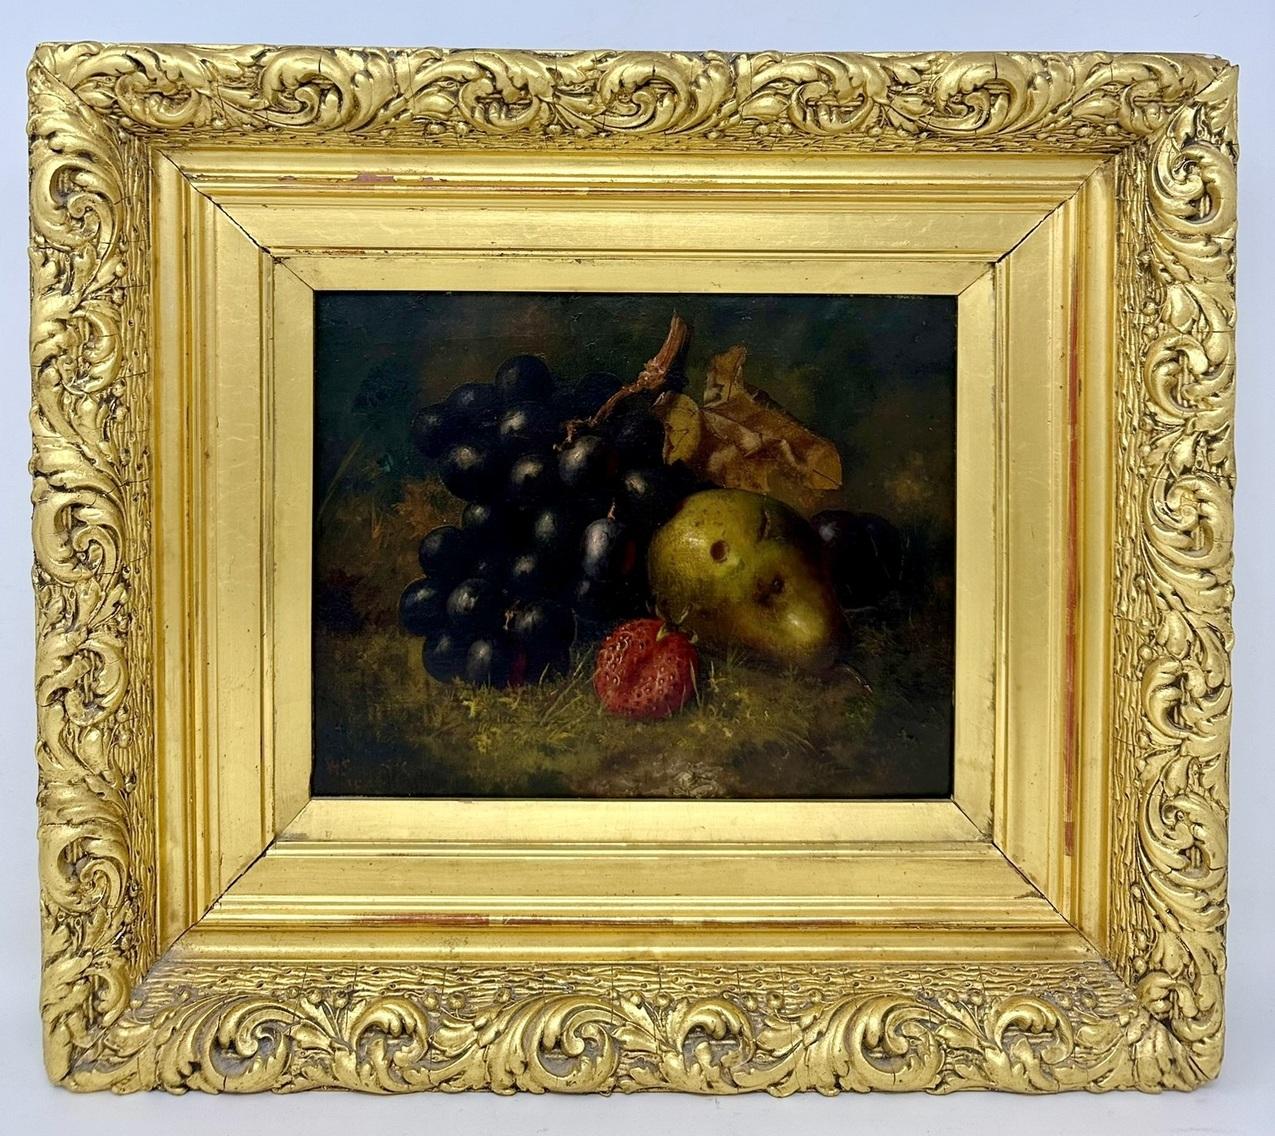 Un exemple de qualité exceptionnelle d'une Nature morte anglaise de fruits encadrée de façon élaborée, peinture à l'huile sur toile, dans le style d'Oliver Clare ou d'Eloise Harriet Stannard, deuxième quart du dix-neuvième siècle, peut-être plus